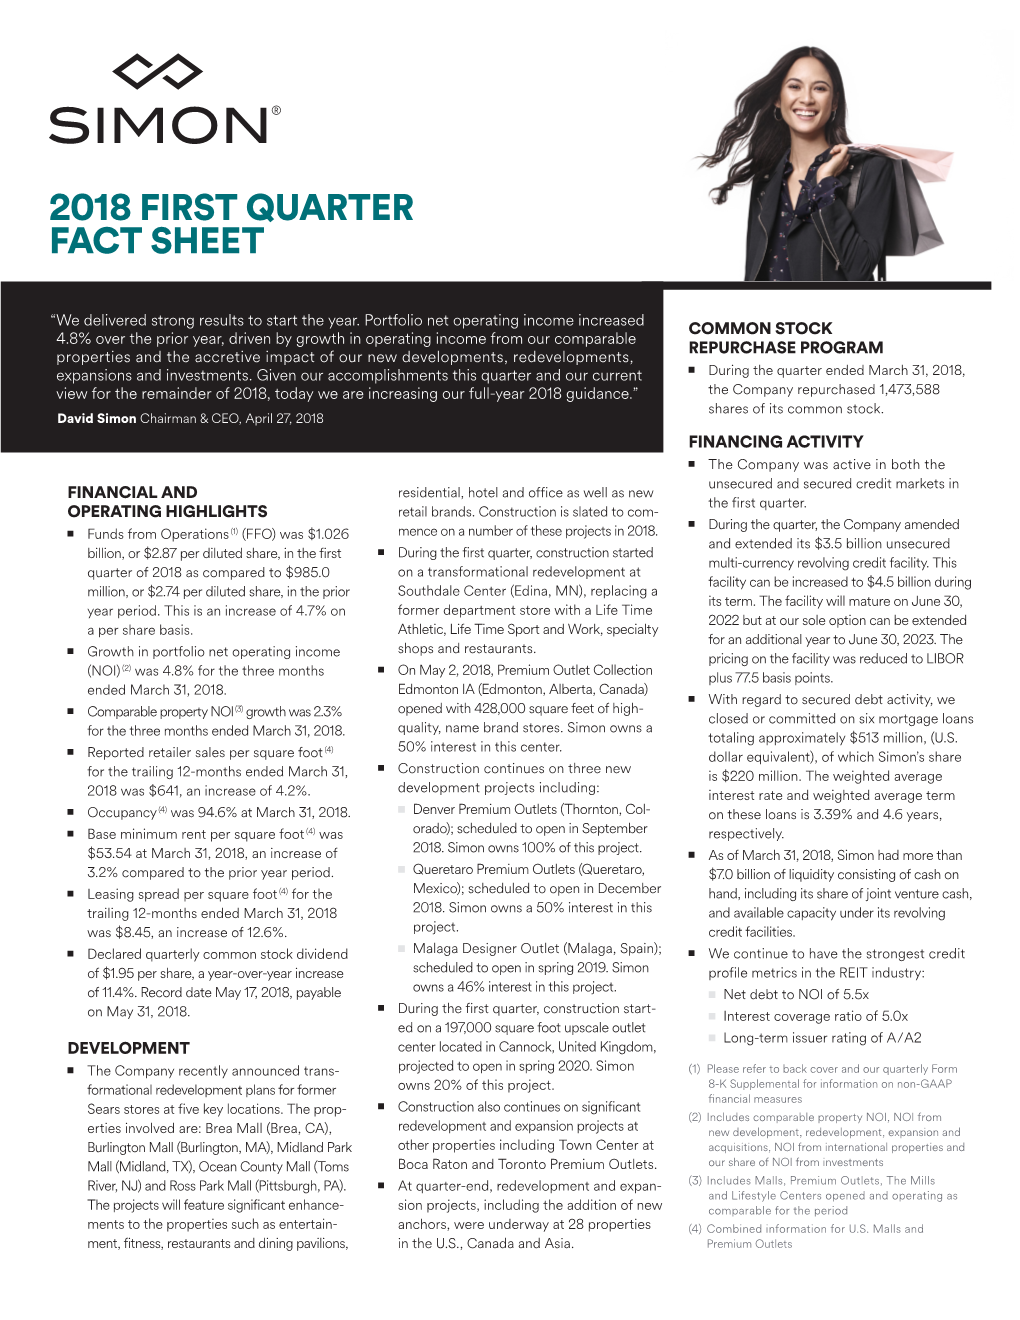 2018 First Quarter Fact Sheet